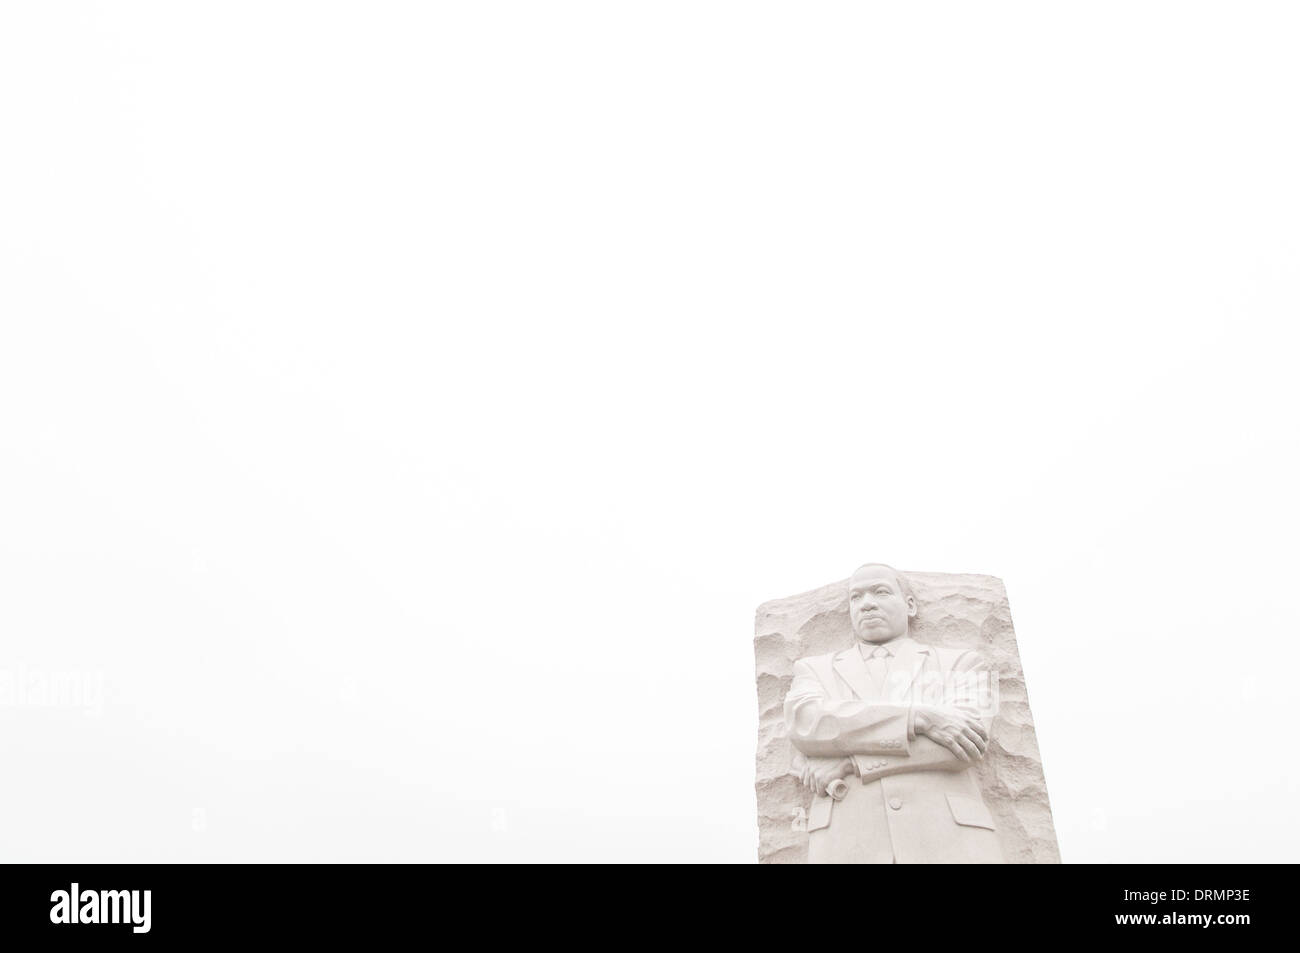 WASHINGTON DC, USA - le 16 octobre 2011, le Mémorial commémore MLK leader des droits civils Martin Luther King Jr. Il tombe sur une ligne directe entre le Lincoln Memorial et le Jefferson Memorial et situé sur les rives de la Tidal Basin. La pièce maîtresse est une statue de pierre sculptée par Lei Yixin sur lequel la figure du Dr King émerge d'un bloc de pierre appelée la pierre de l'espoir. Chaque printemps, les cerisiers en fleurs sur le Tidal Basin éclosent. Banque D'Images